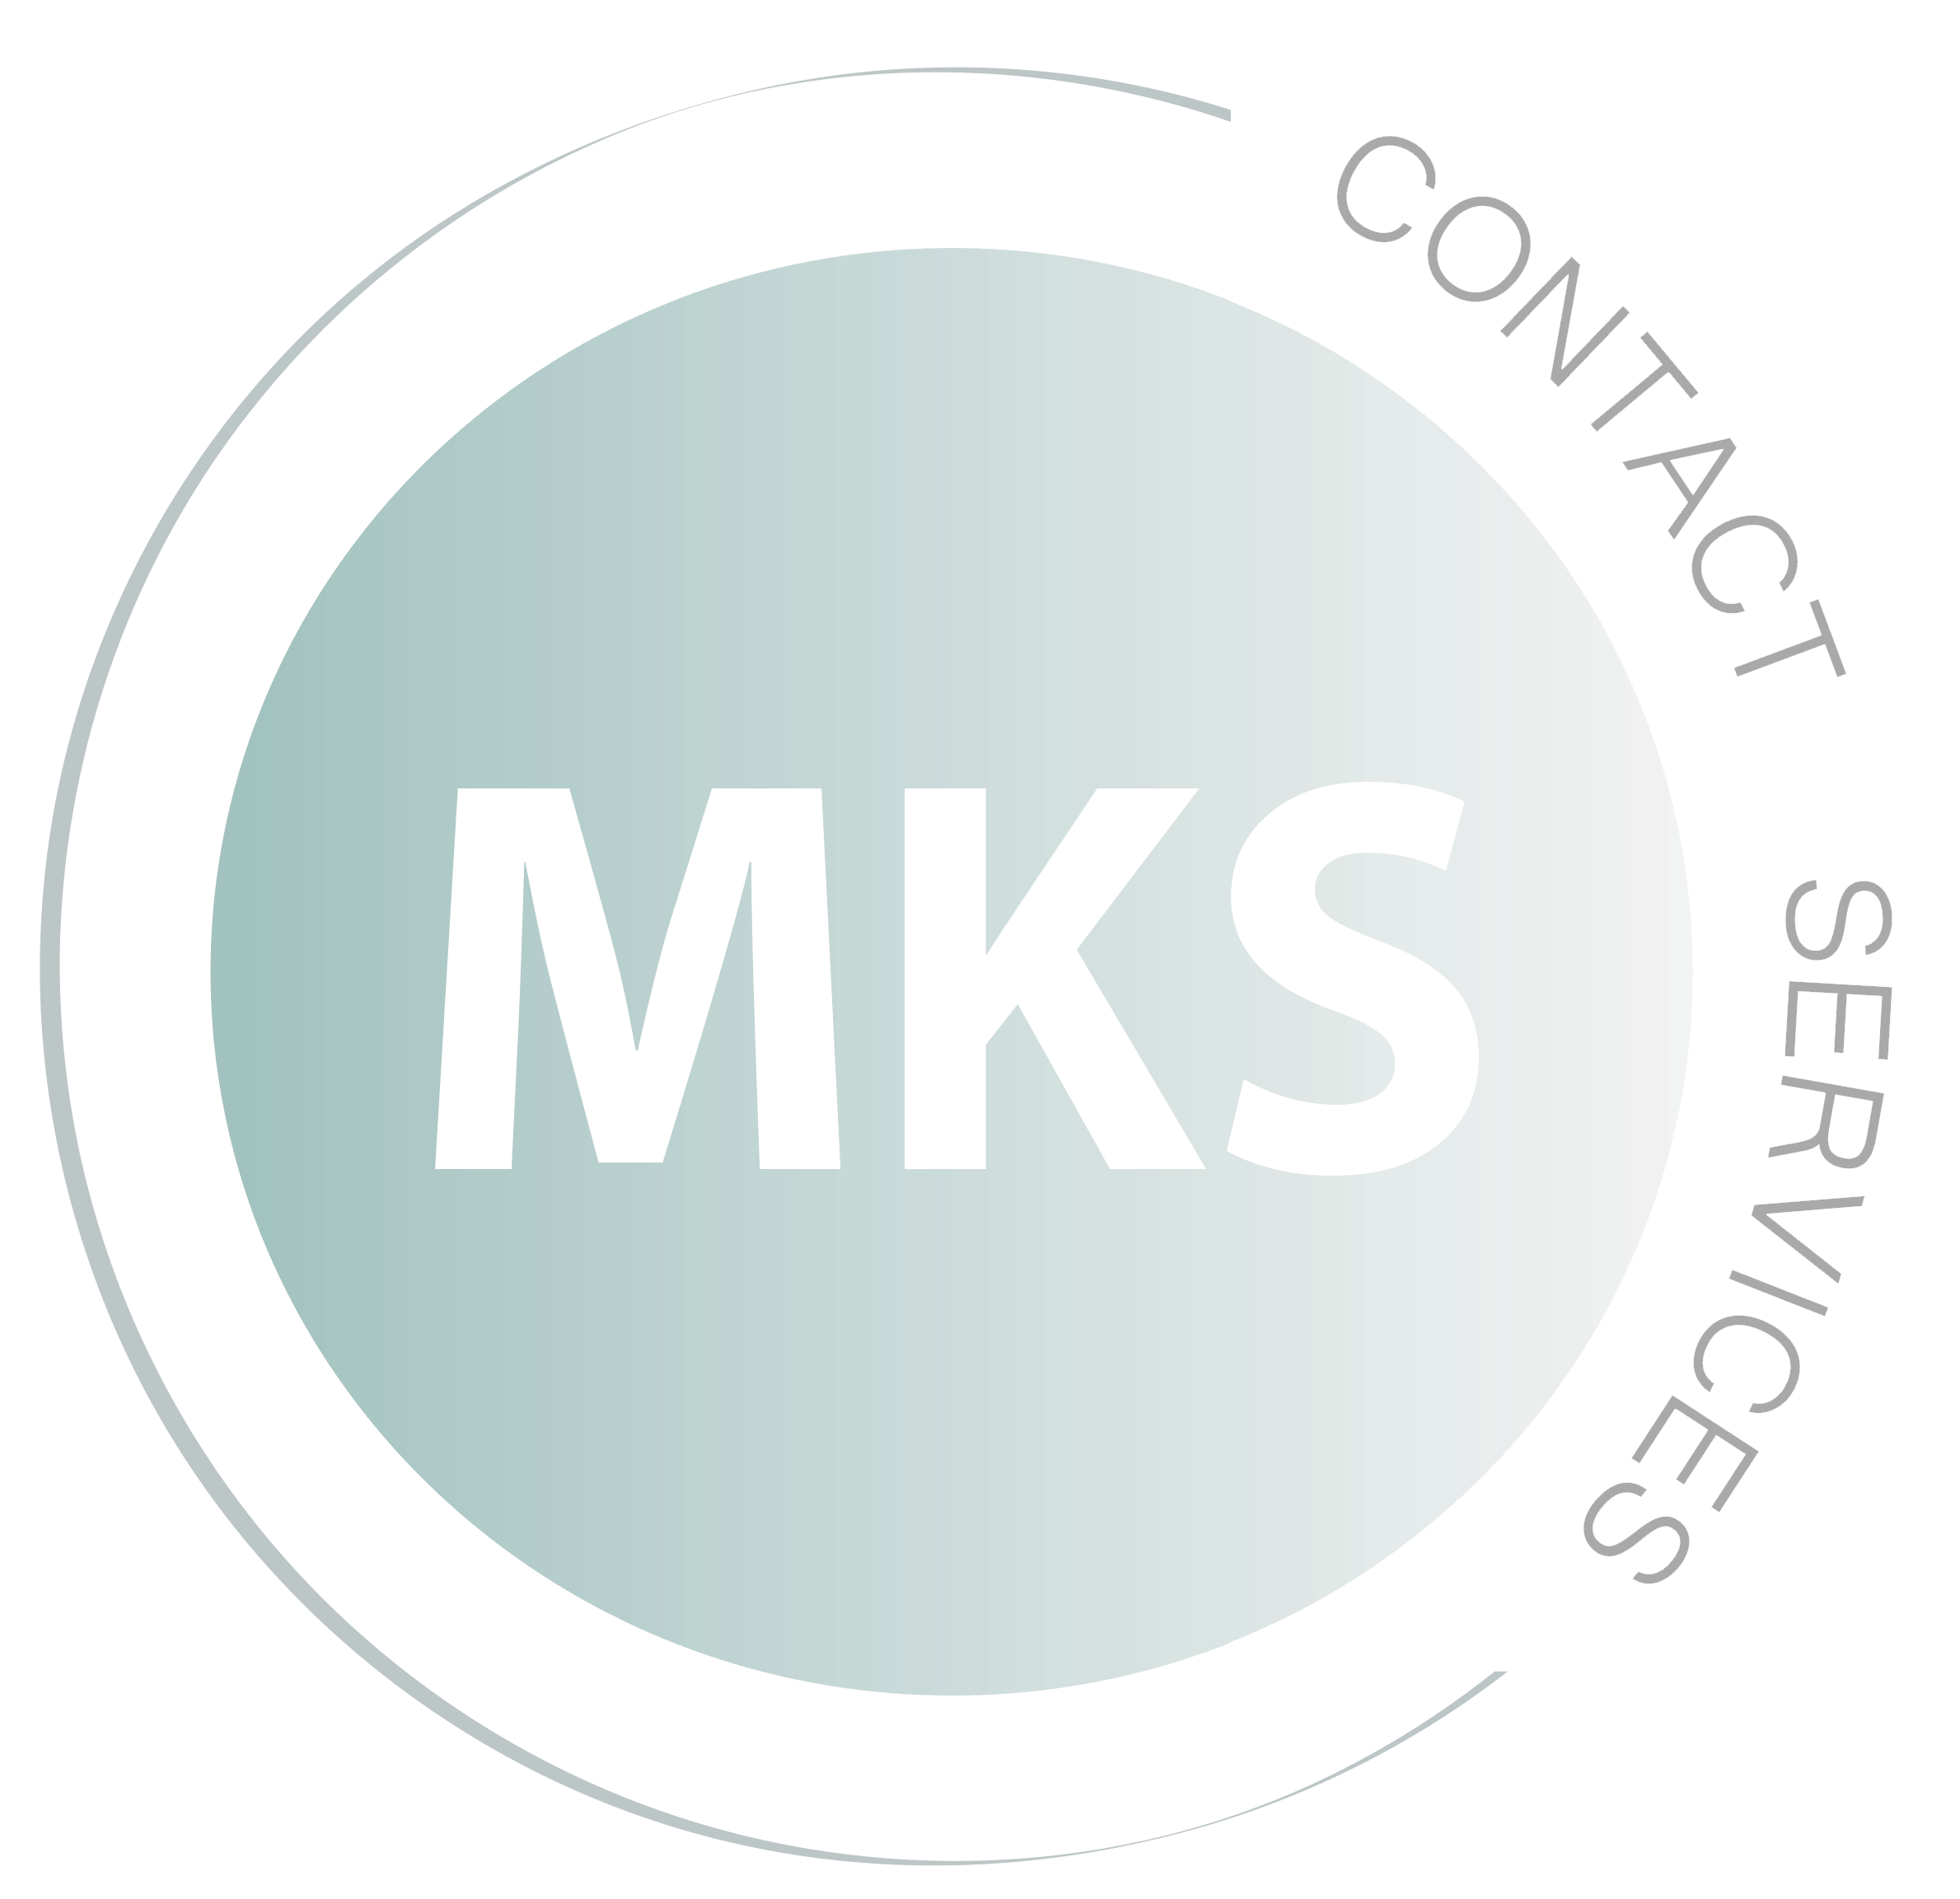 Mks Logo Design | suturasonline.com.br